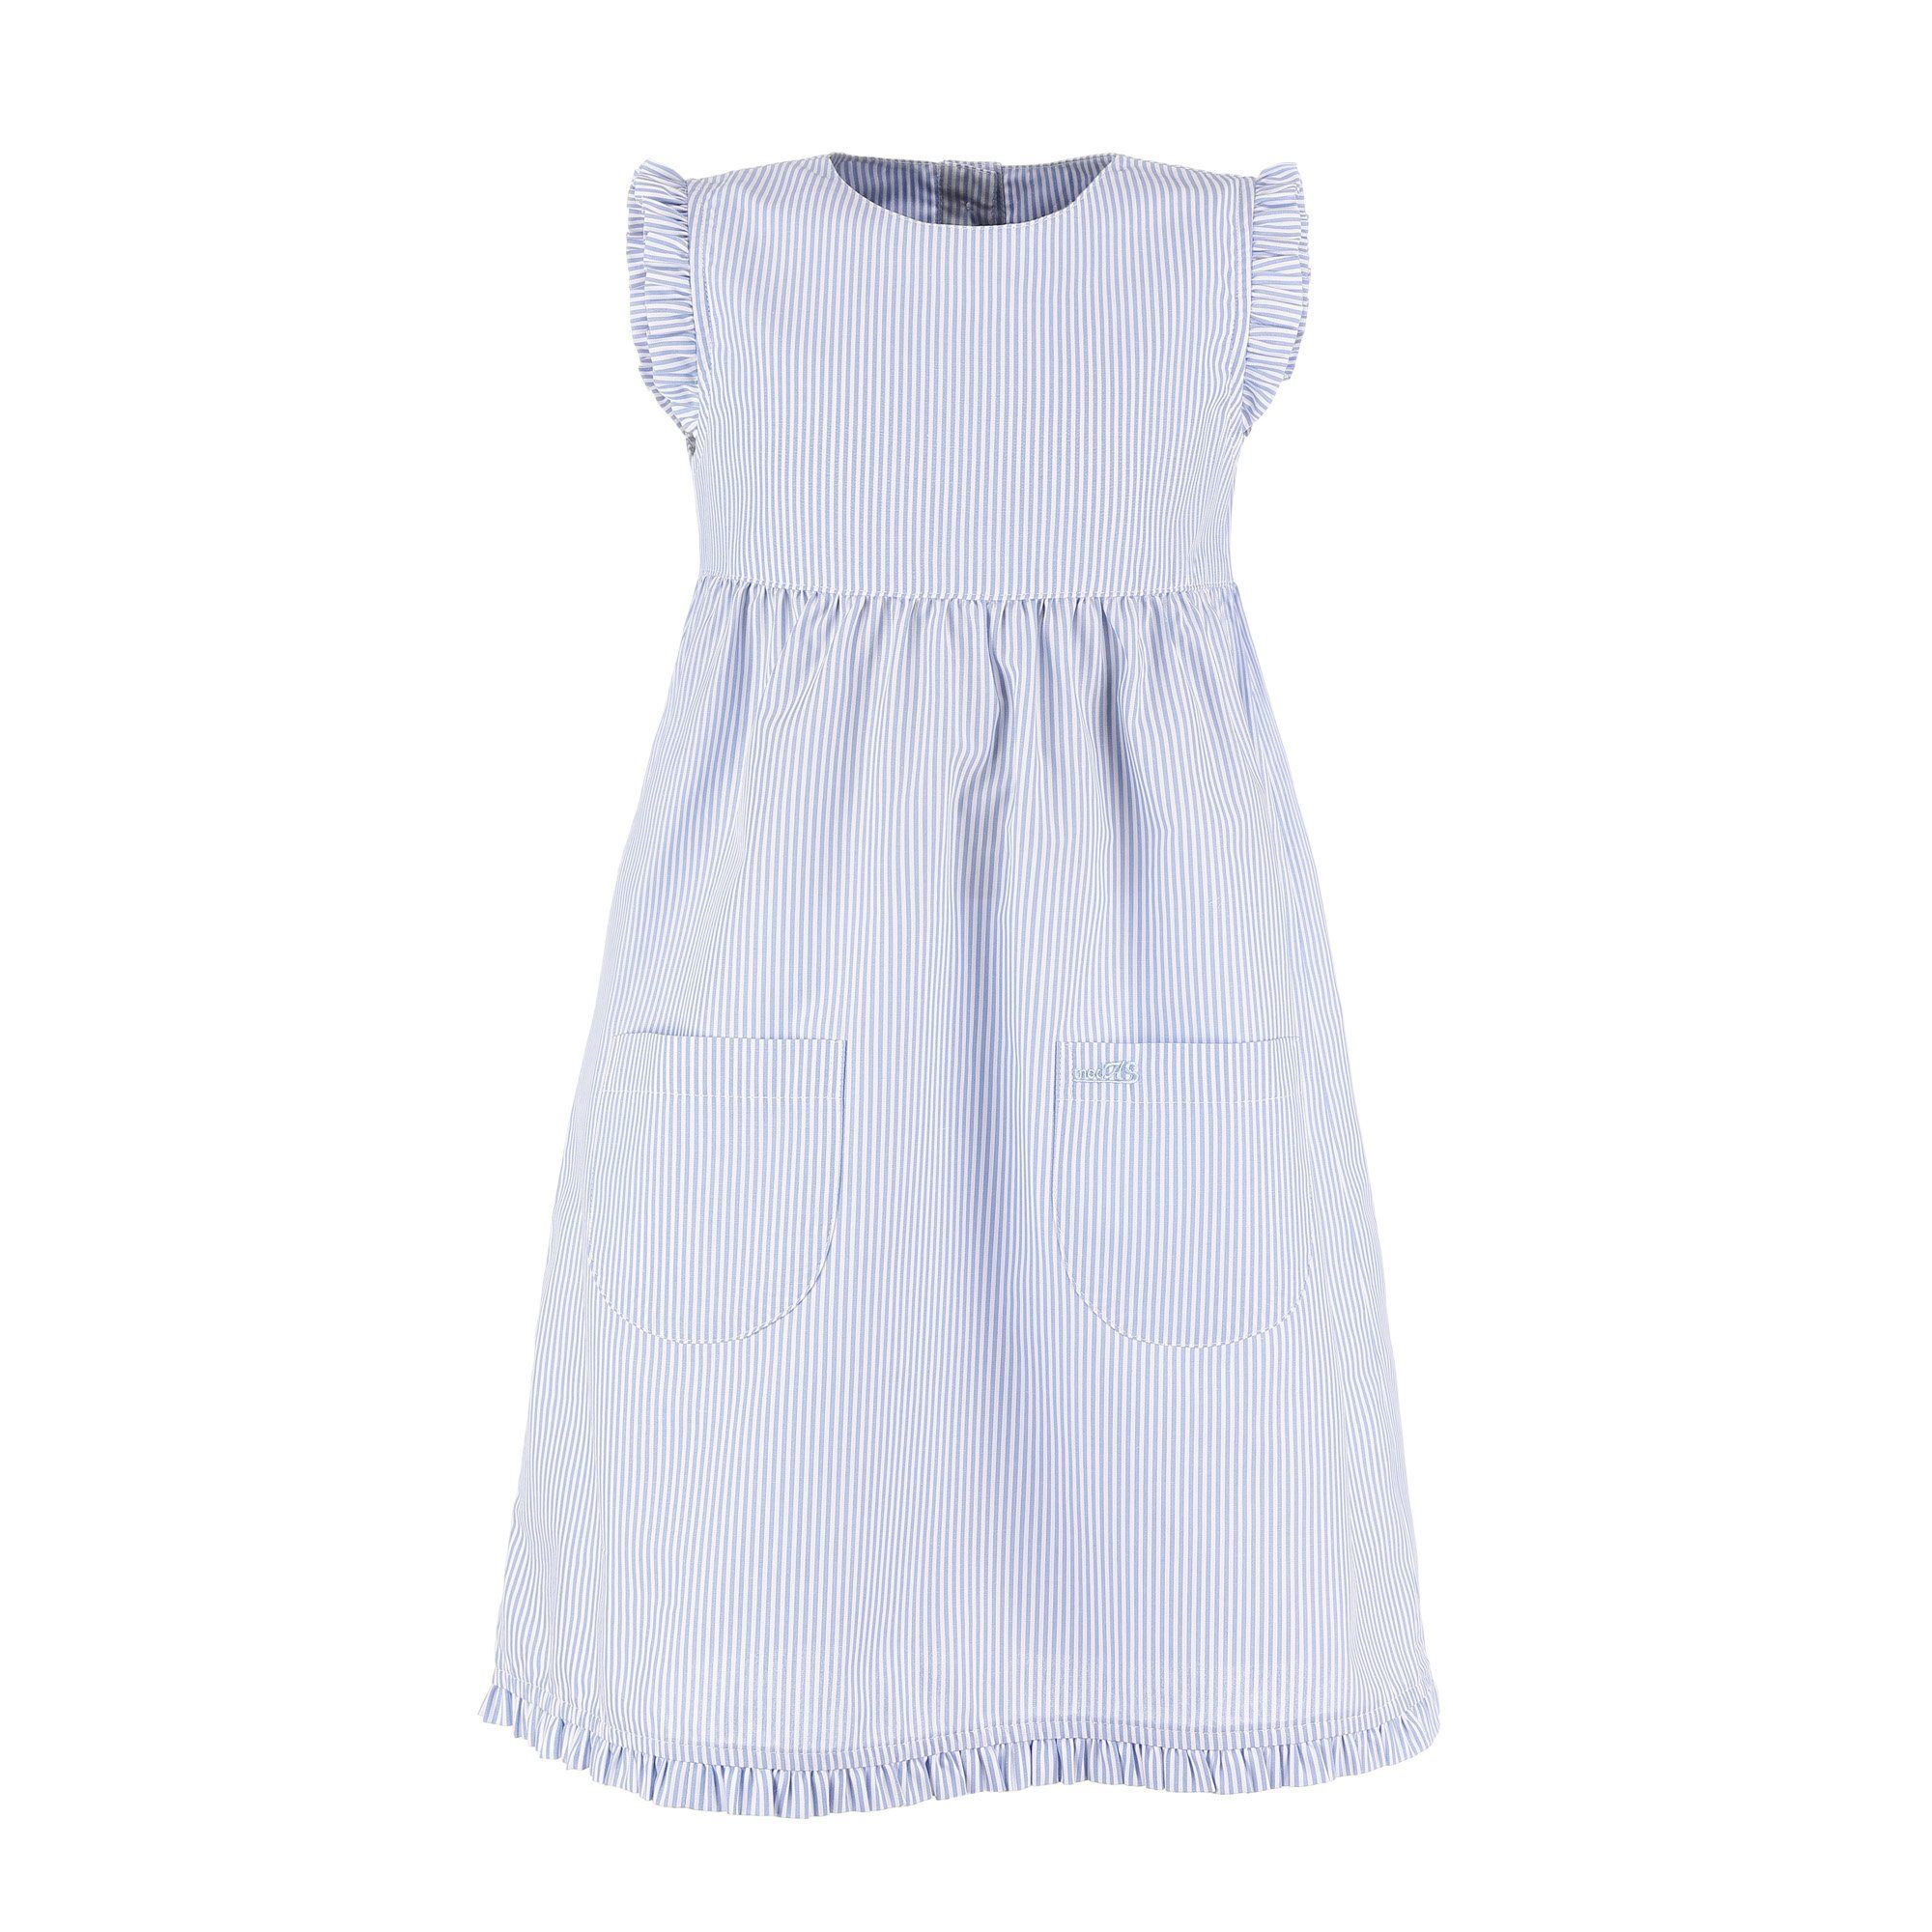 (073) Mädchenkleid mit Kleid Sommerkleid Rüschen - Streifen gestreift modAS Kinder mit azur/weiß gestreift